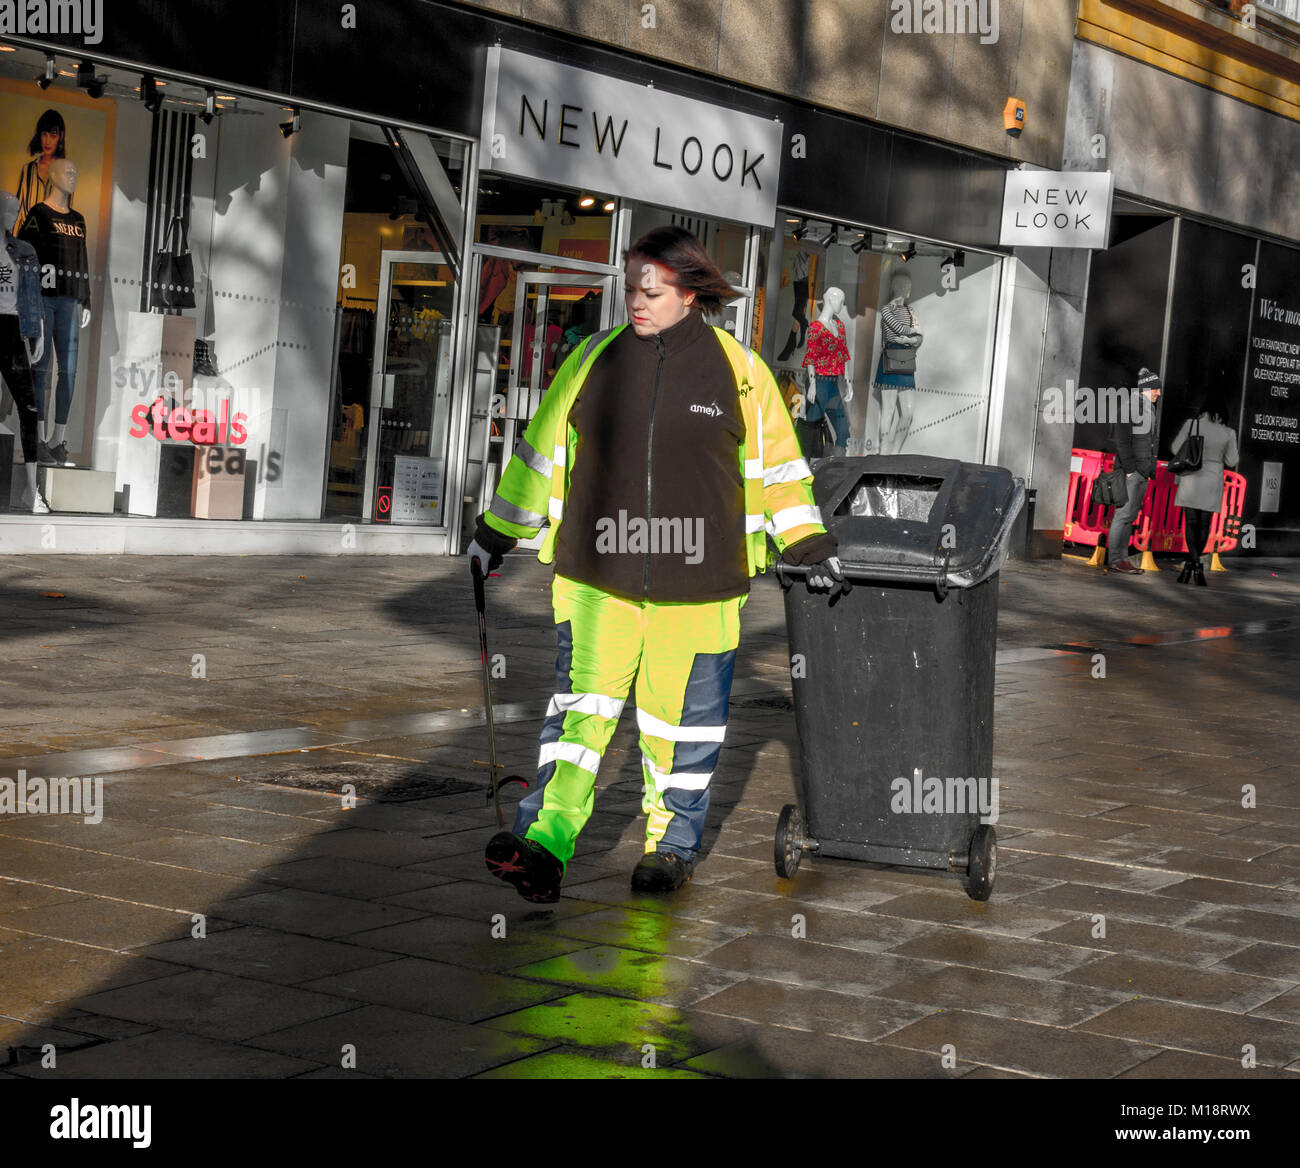 Junge Frau/Frauen verweigern und Schmutzwanne/street Cleaner, das Tragen von fluoreszierenden Kleidung. Das Stadtzentrum von Peterborough, Cambridgeshire, England, UK. Stockfoto